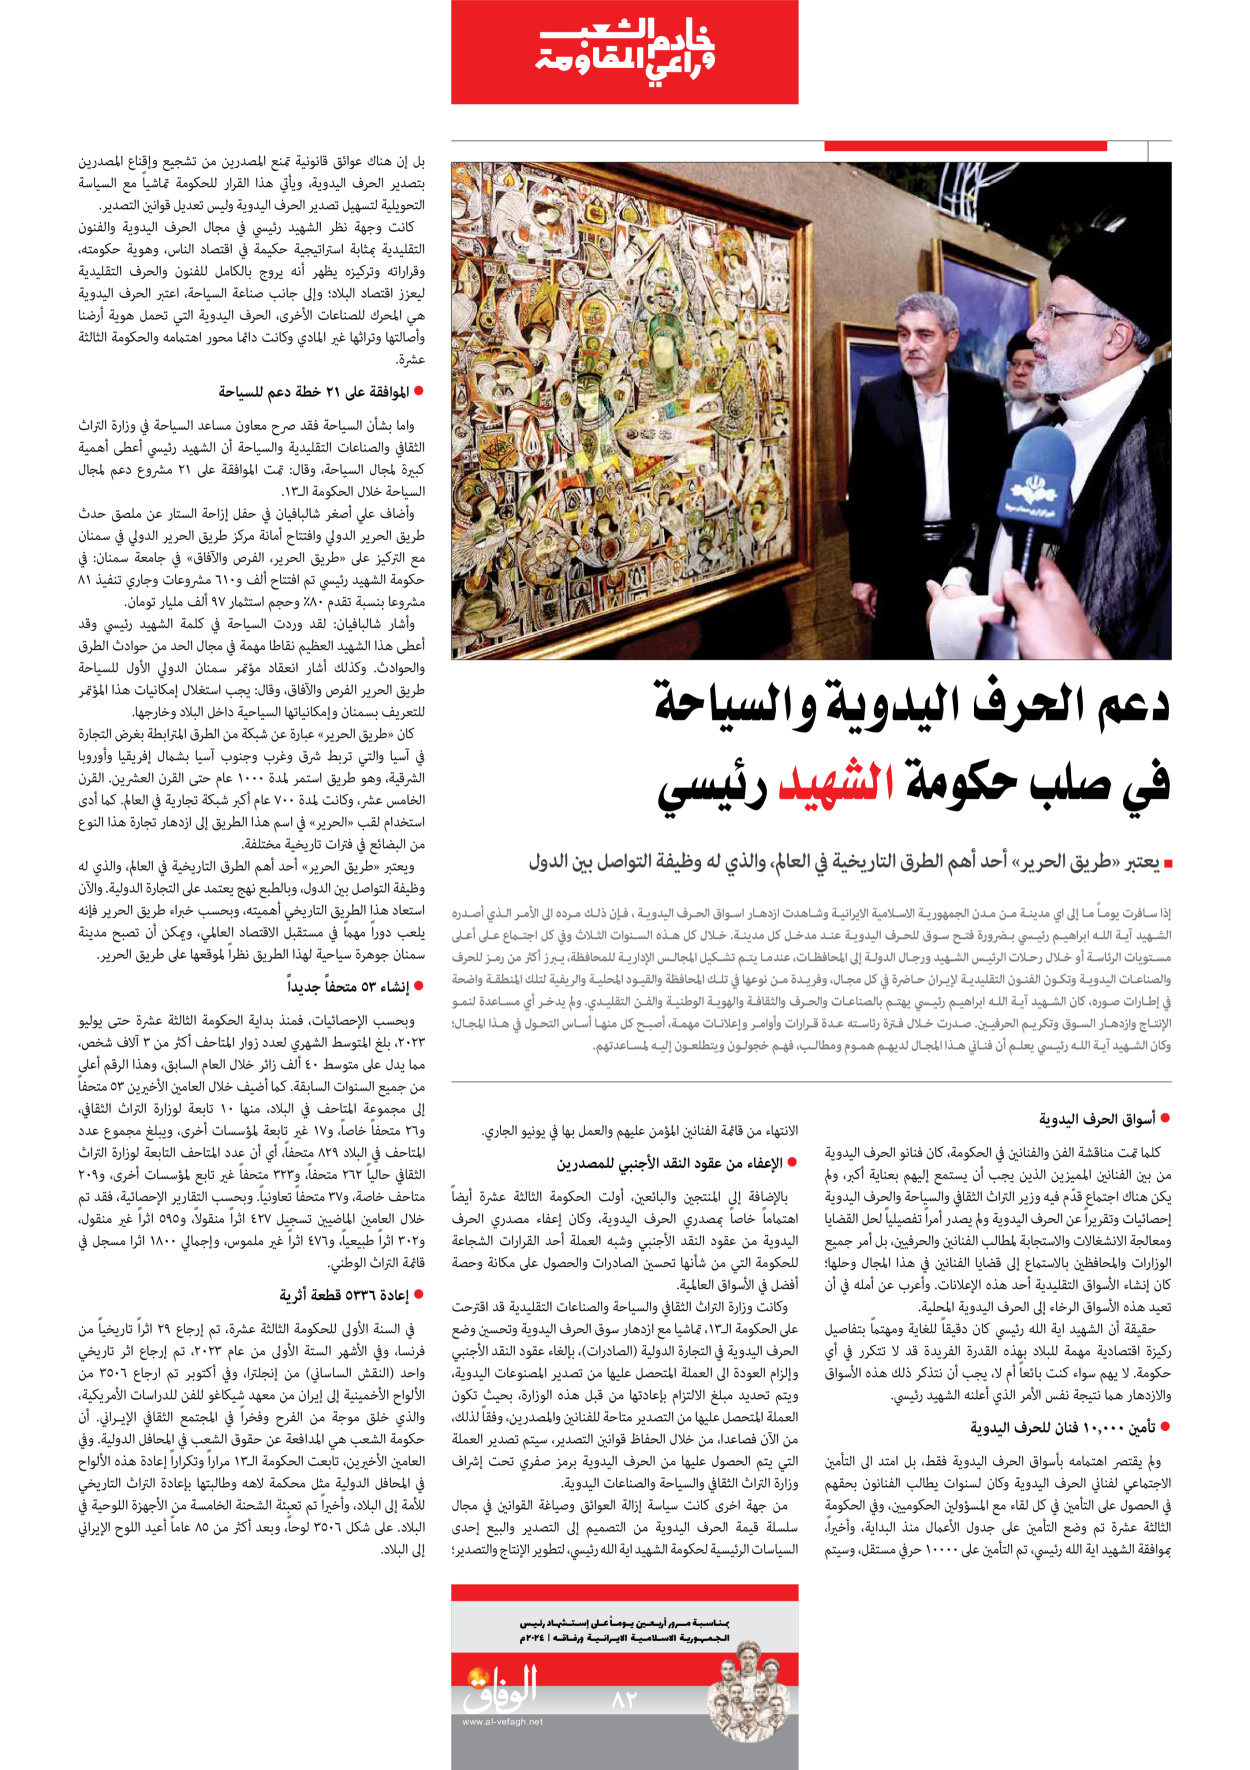 صحیفة ایران الدولیة الوفاق - ملحق ویژه نامه چهلم شهید رییسی - ٢٩ يونيو ٢٠٢٤ - الصفحة ۸۲